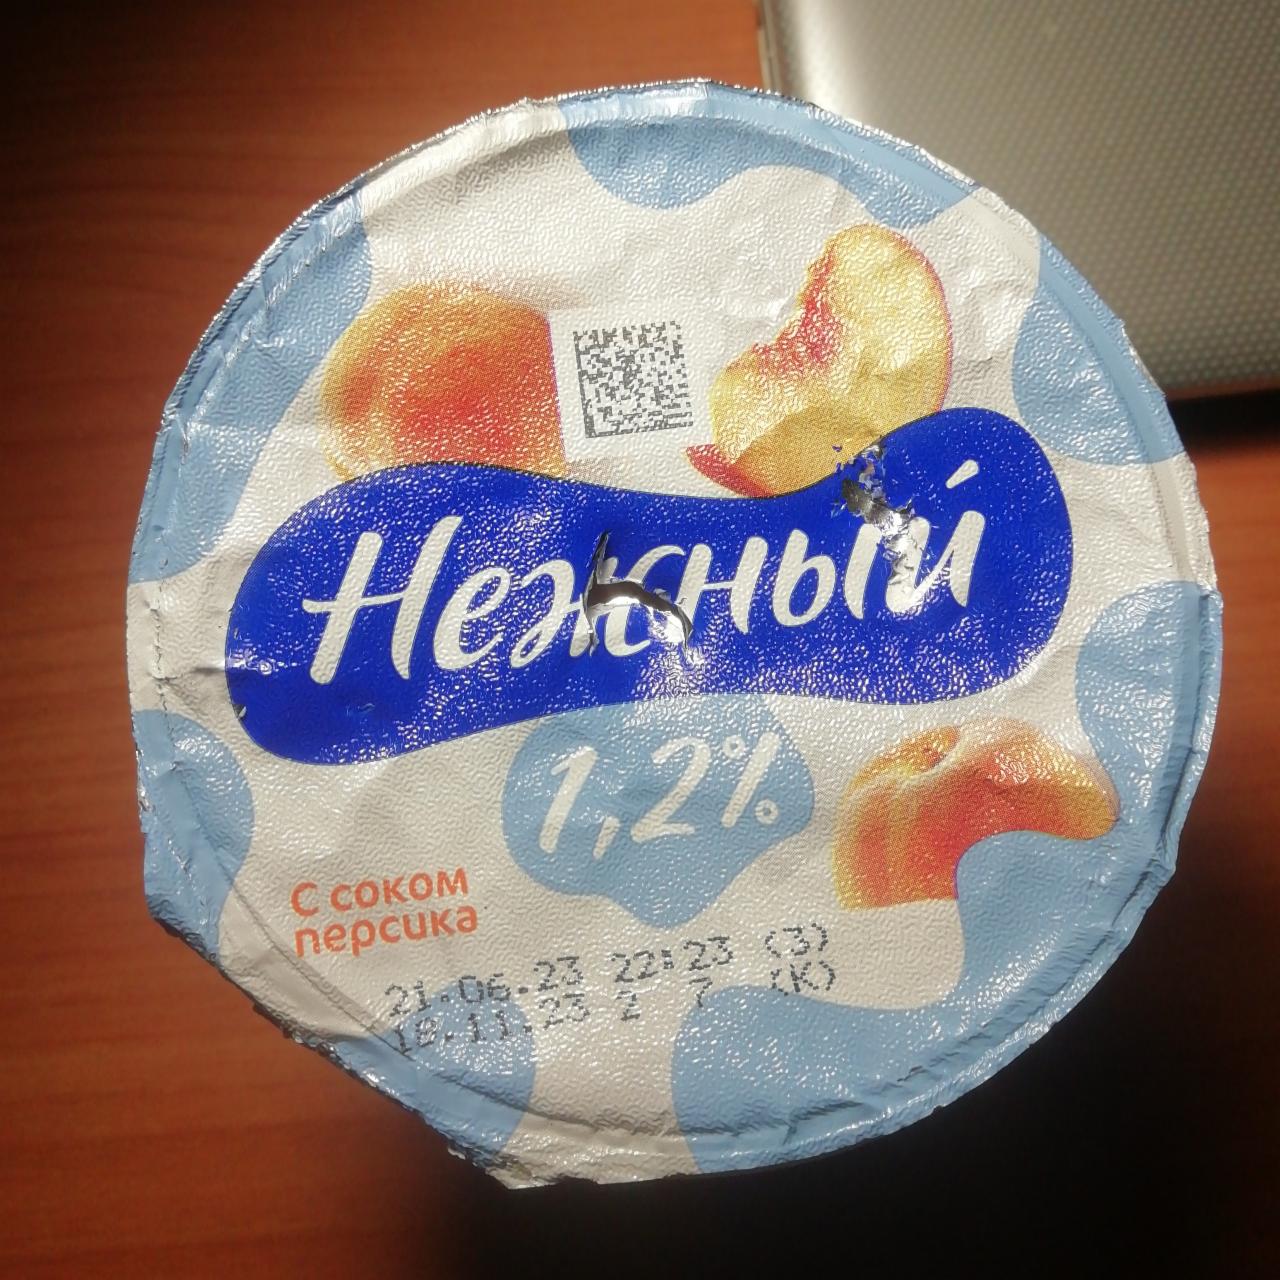 Фото - Продукт йогуртовый Нежный с соком персика 1.2% Campina